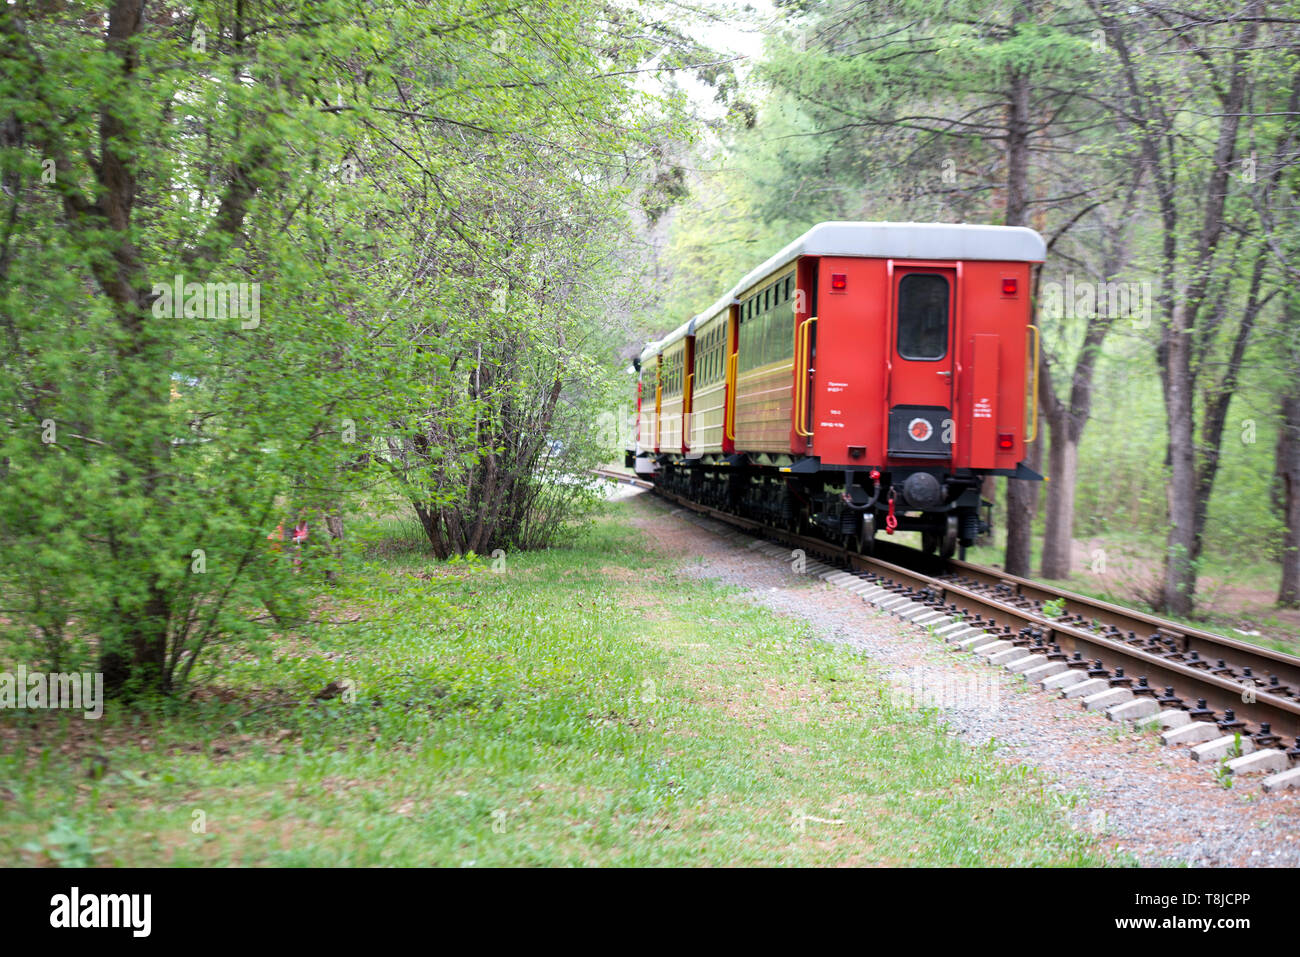 Die Rückseite des Zuges mit einem roten Wagen am Ende der Straße durch eine wunderschöne Landschaft, Eisenbahn. Das letzte Auto der abgehenden Zug Stockfoto